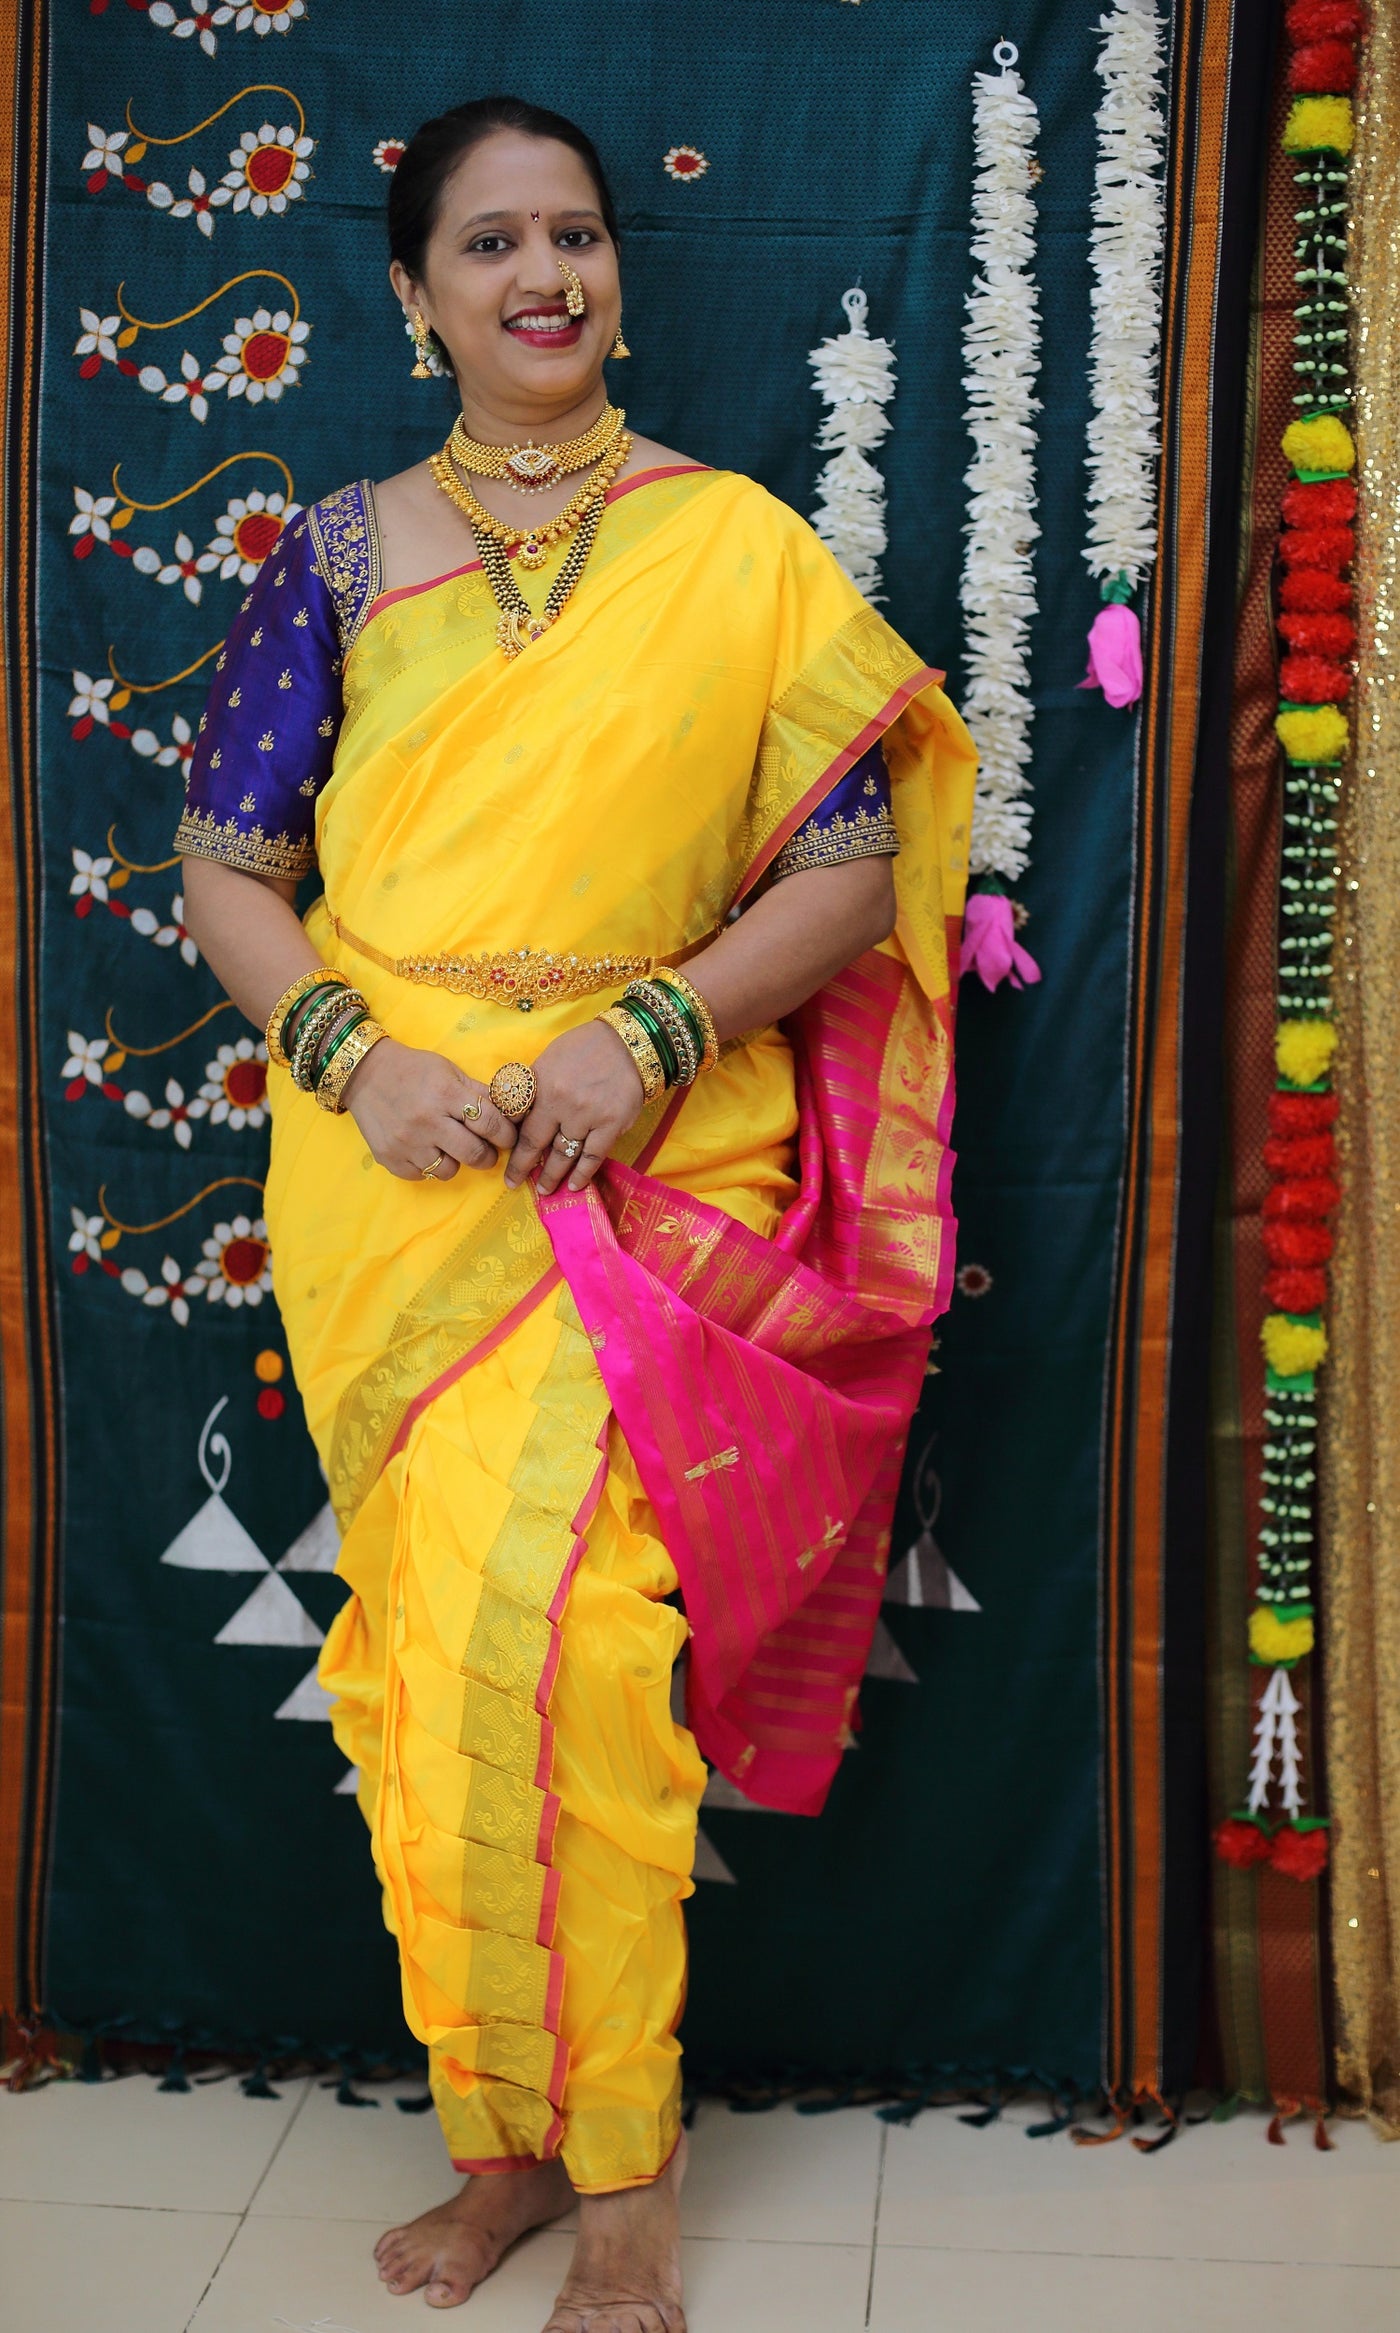 Stitched Marathi Nauvari saree - Rajalaxmi style - No Blouse